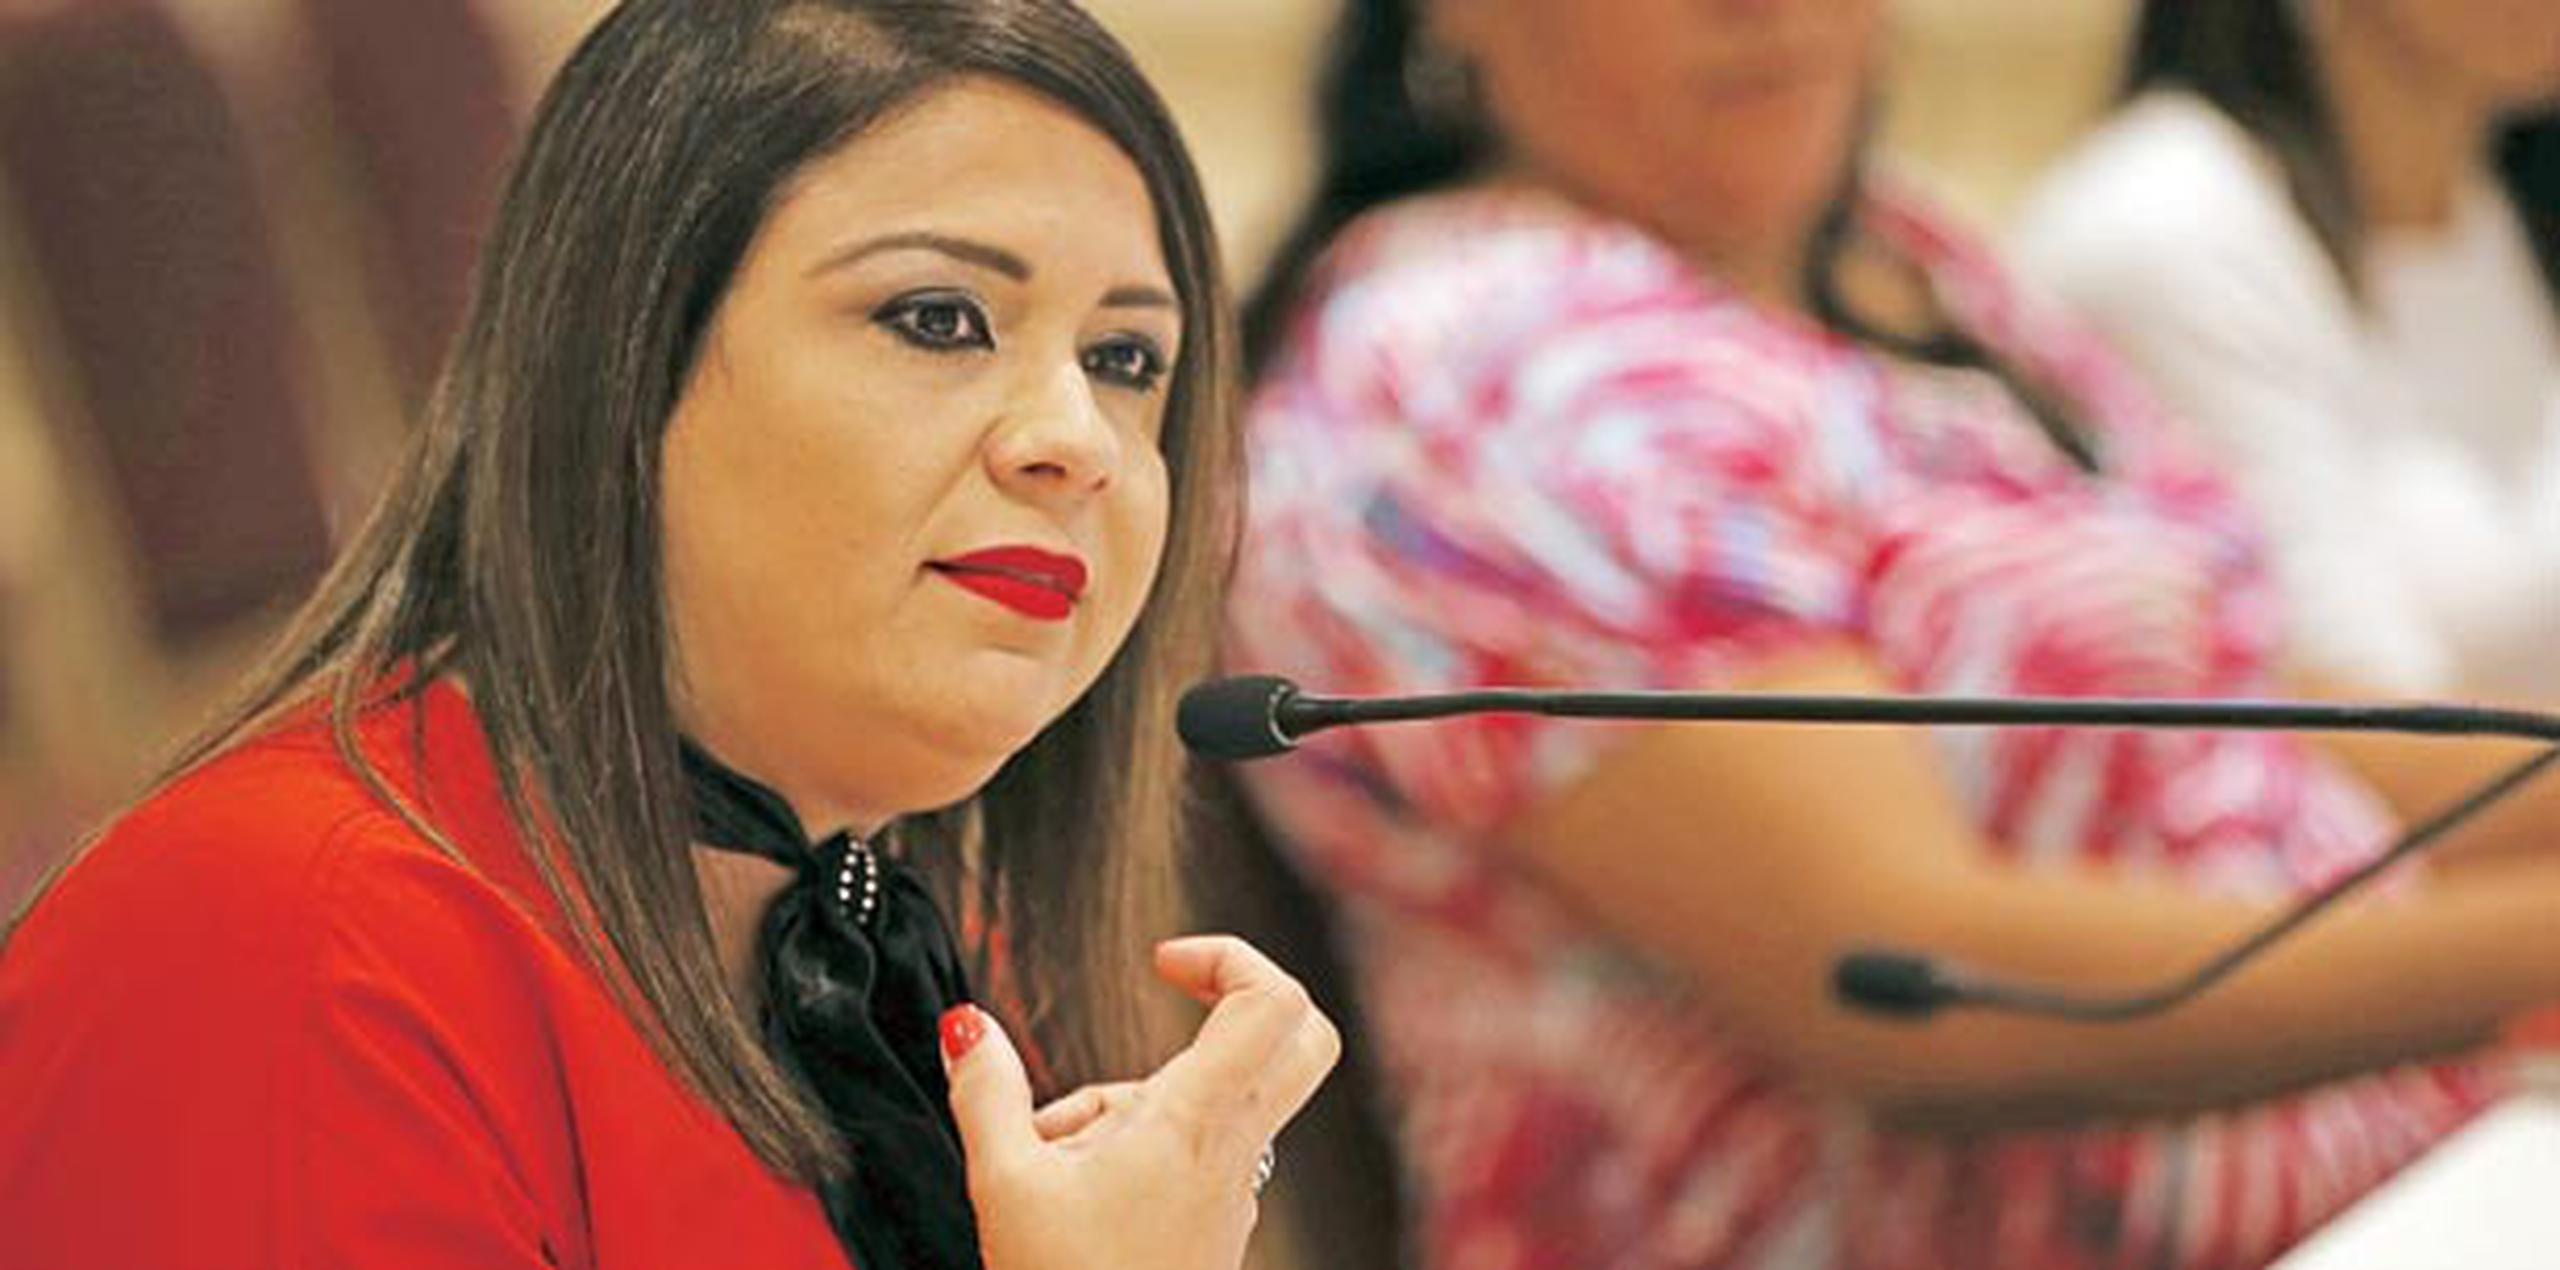 Previo a su mención en el sonado caso de Anaudi, la senadora Mari Tere González colgó varios mensajes de motivación e inspiracionales en sus redes sociales. Sin embargo, hace varios días que no tiene participación en sus páginas.  (Archivo)